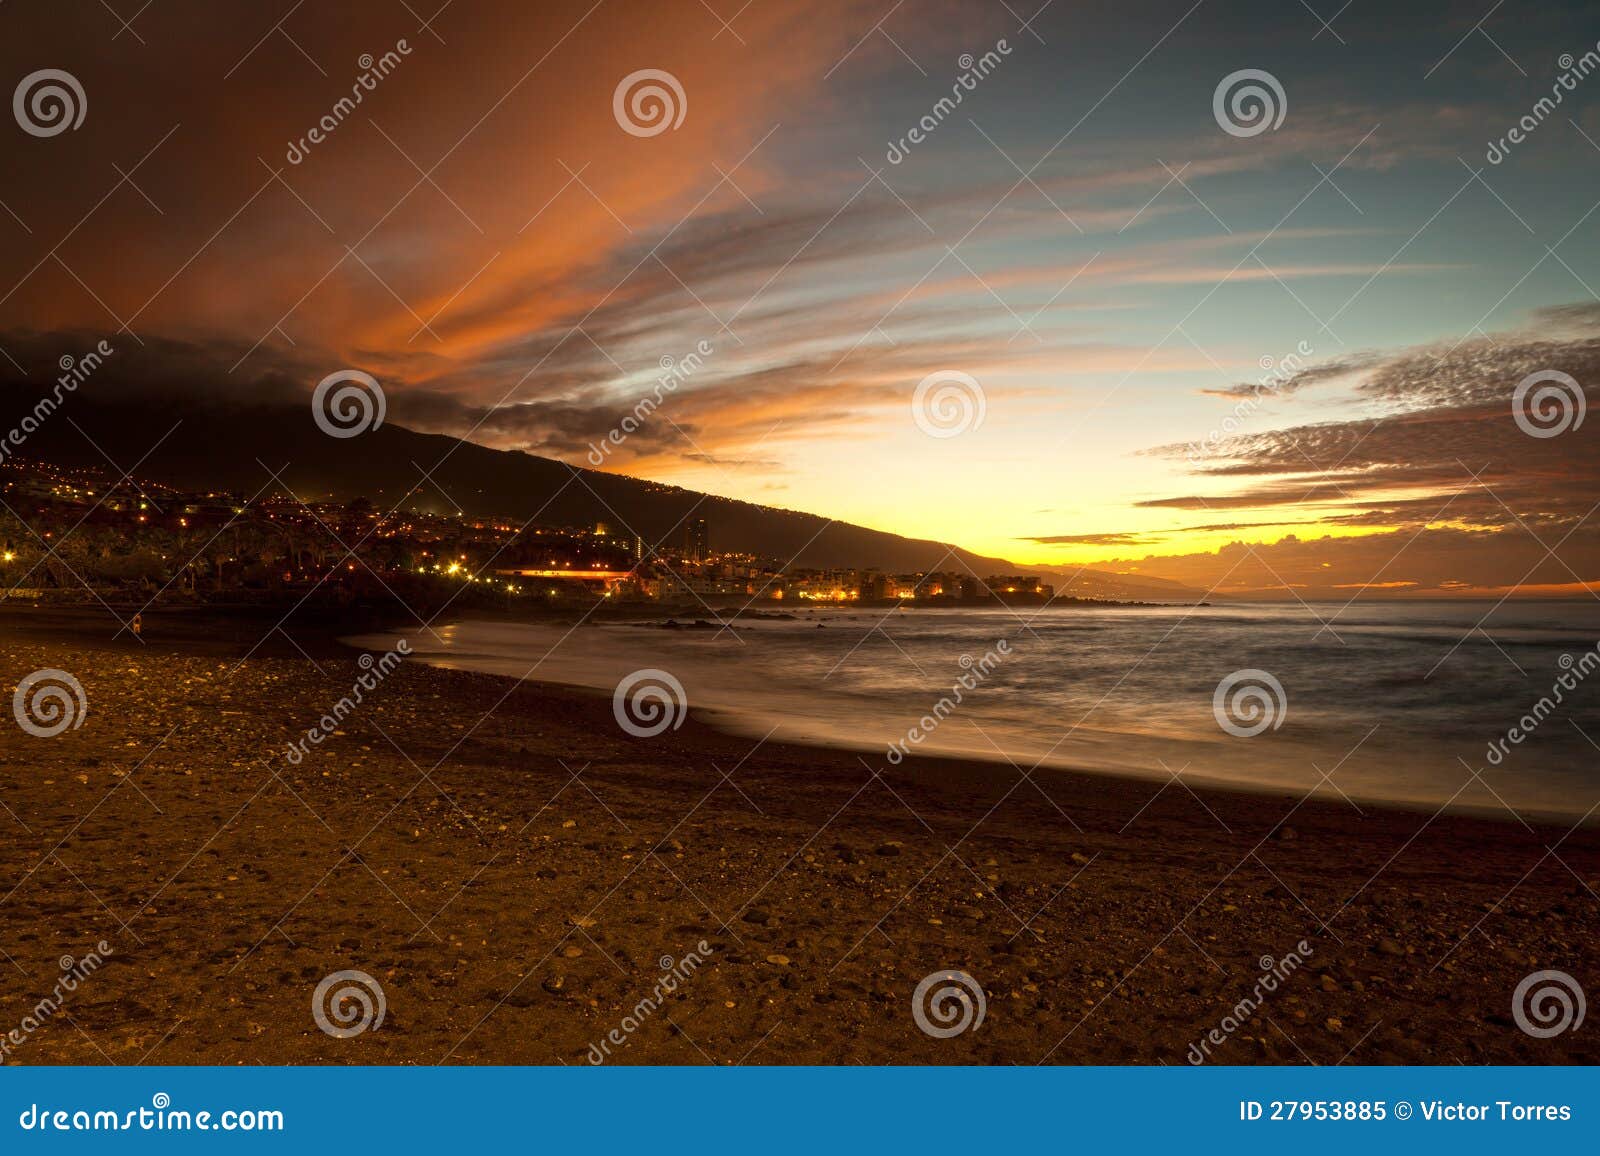 sunset in playa jardin, puerto de la cruz